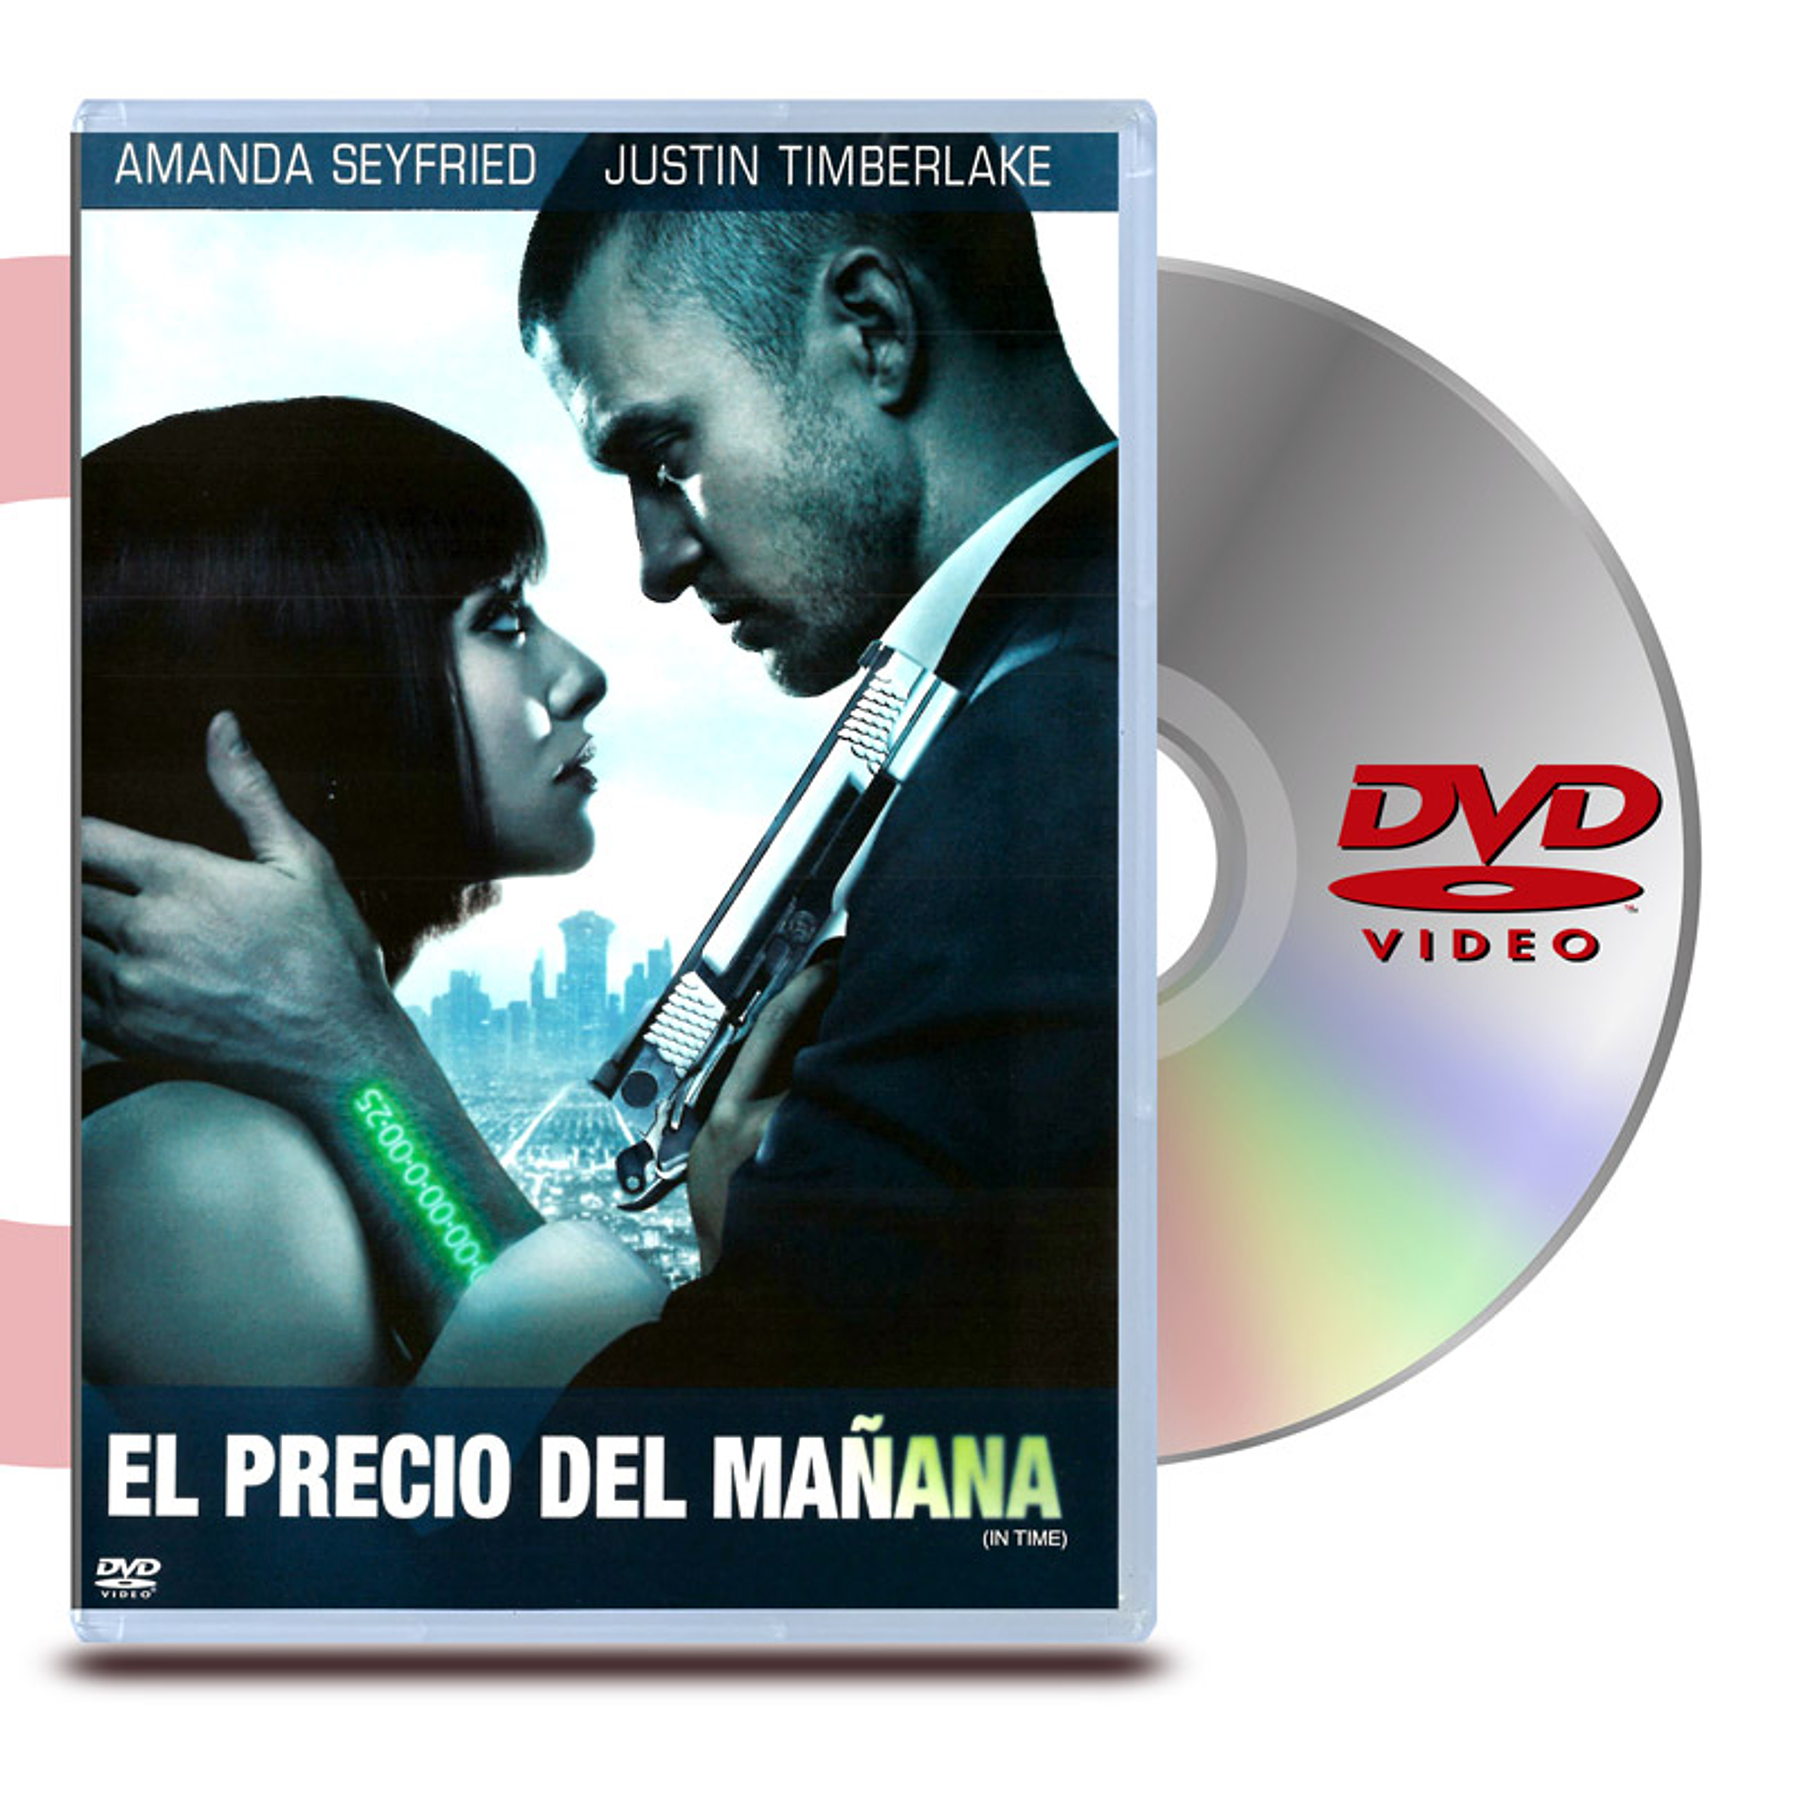 DVD EL PRECIO DE MAÑANA